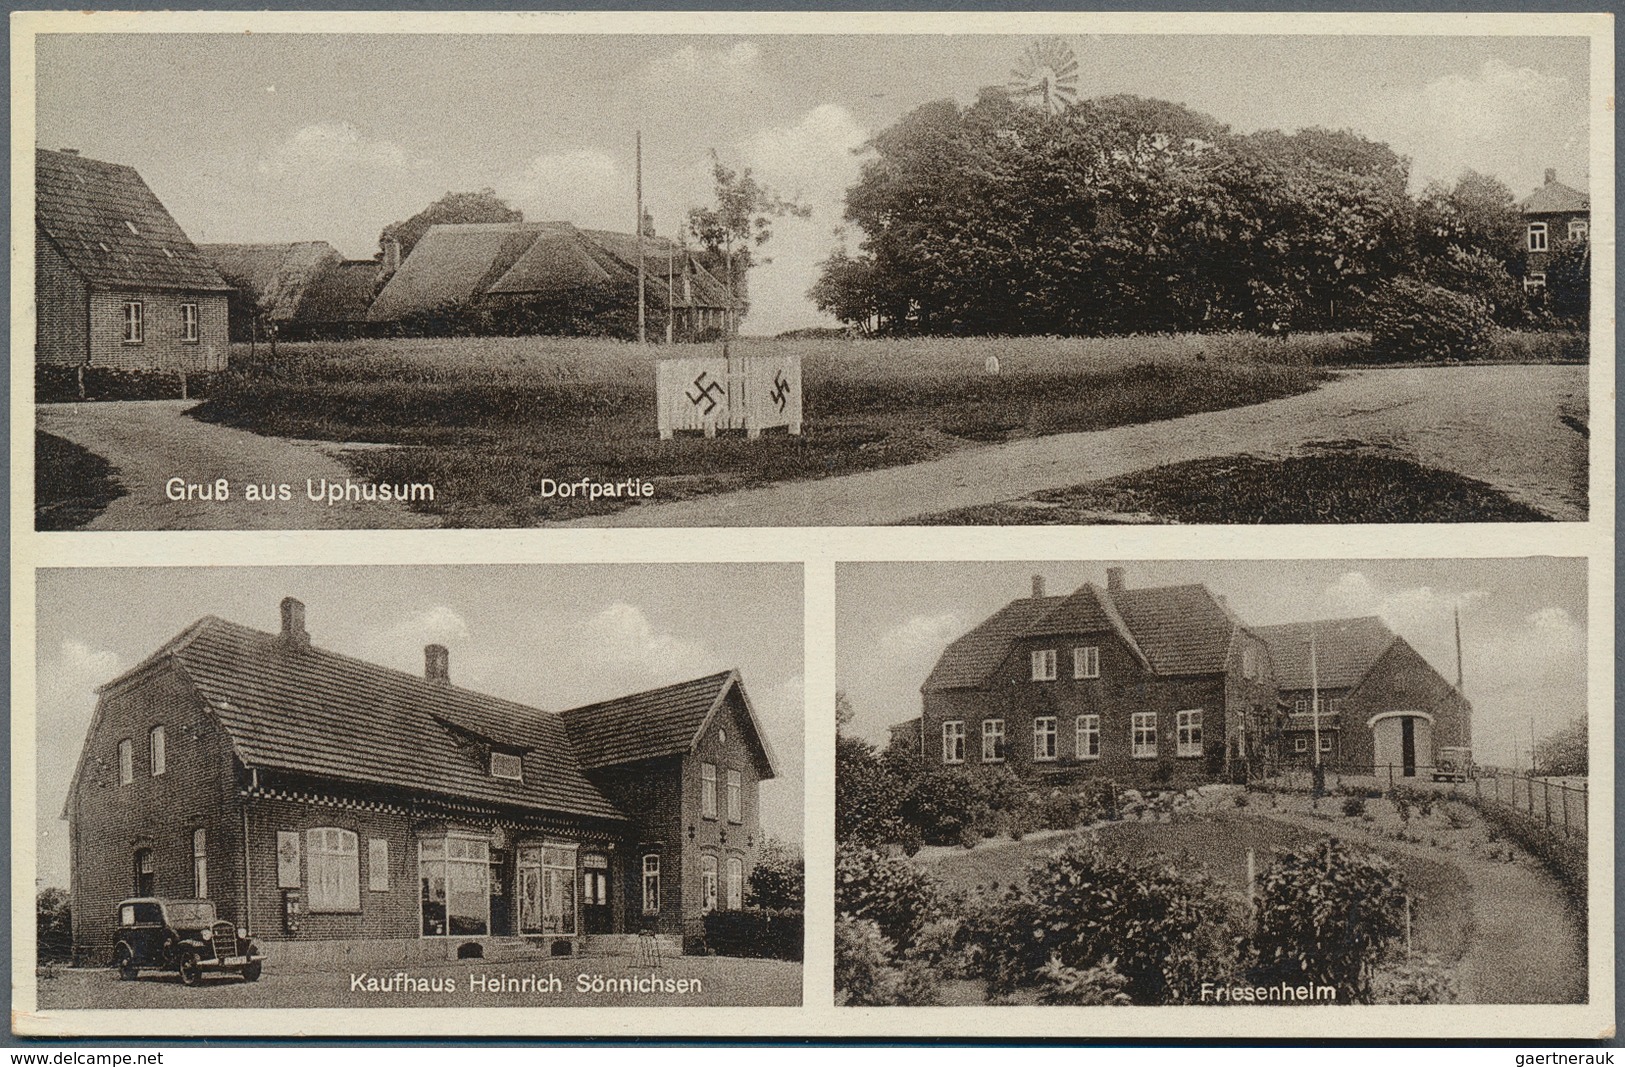 Ansichtskarten: Schleswig-Holstein: SCHLESWIG und HOLSTEIN, umfangreicher Posten mit über 450 alten